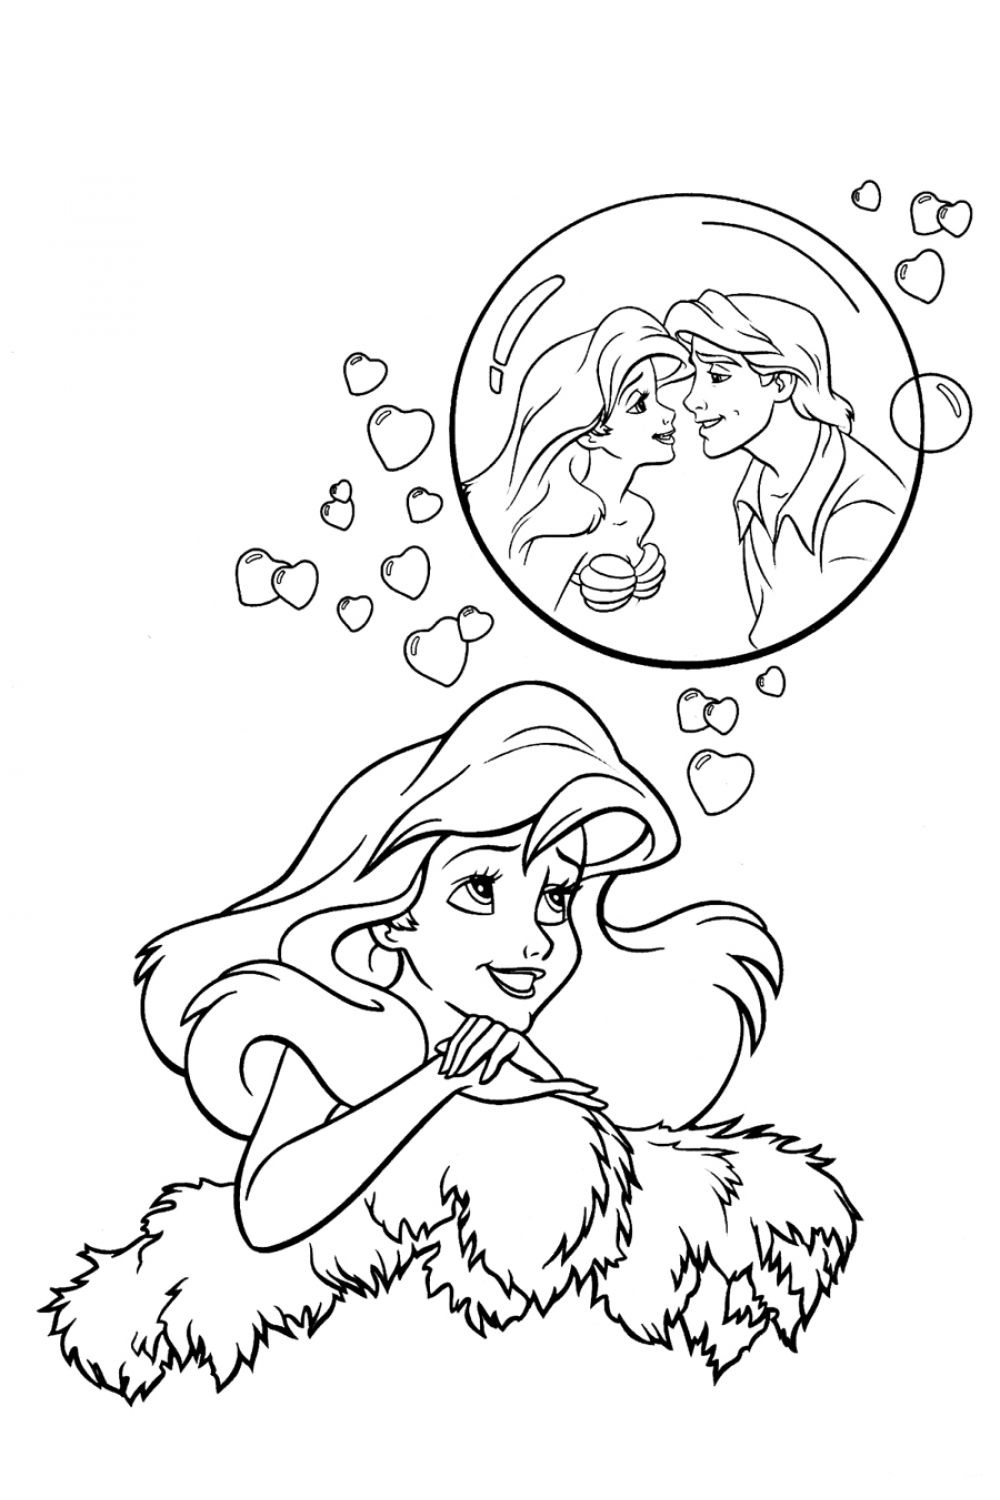 Dibujo de Ariel 36 de La sirenita para imprimir y colorear